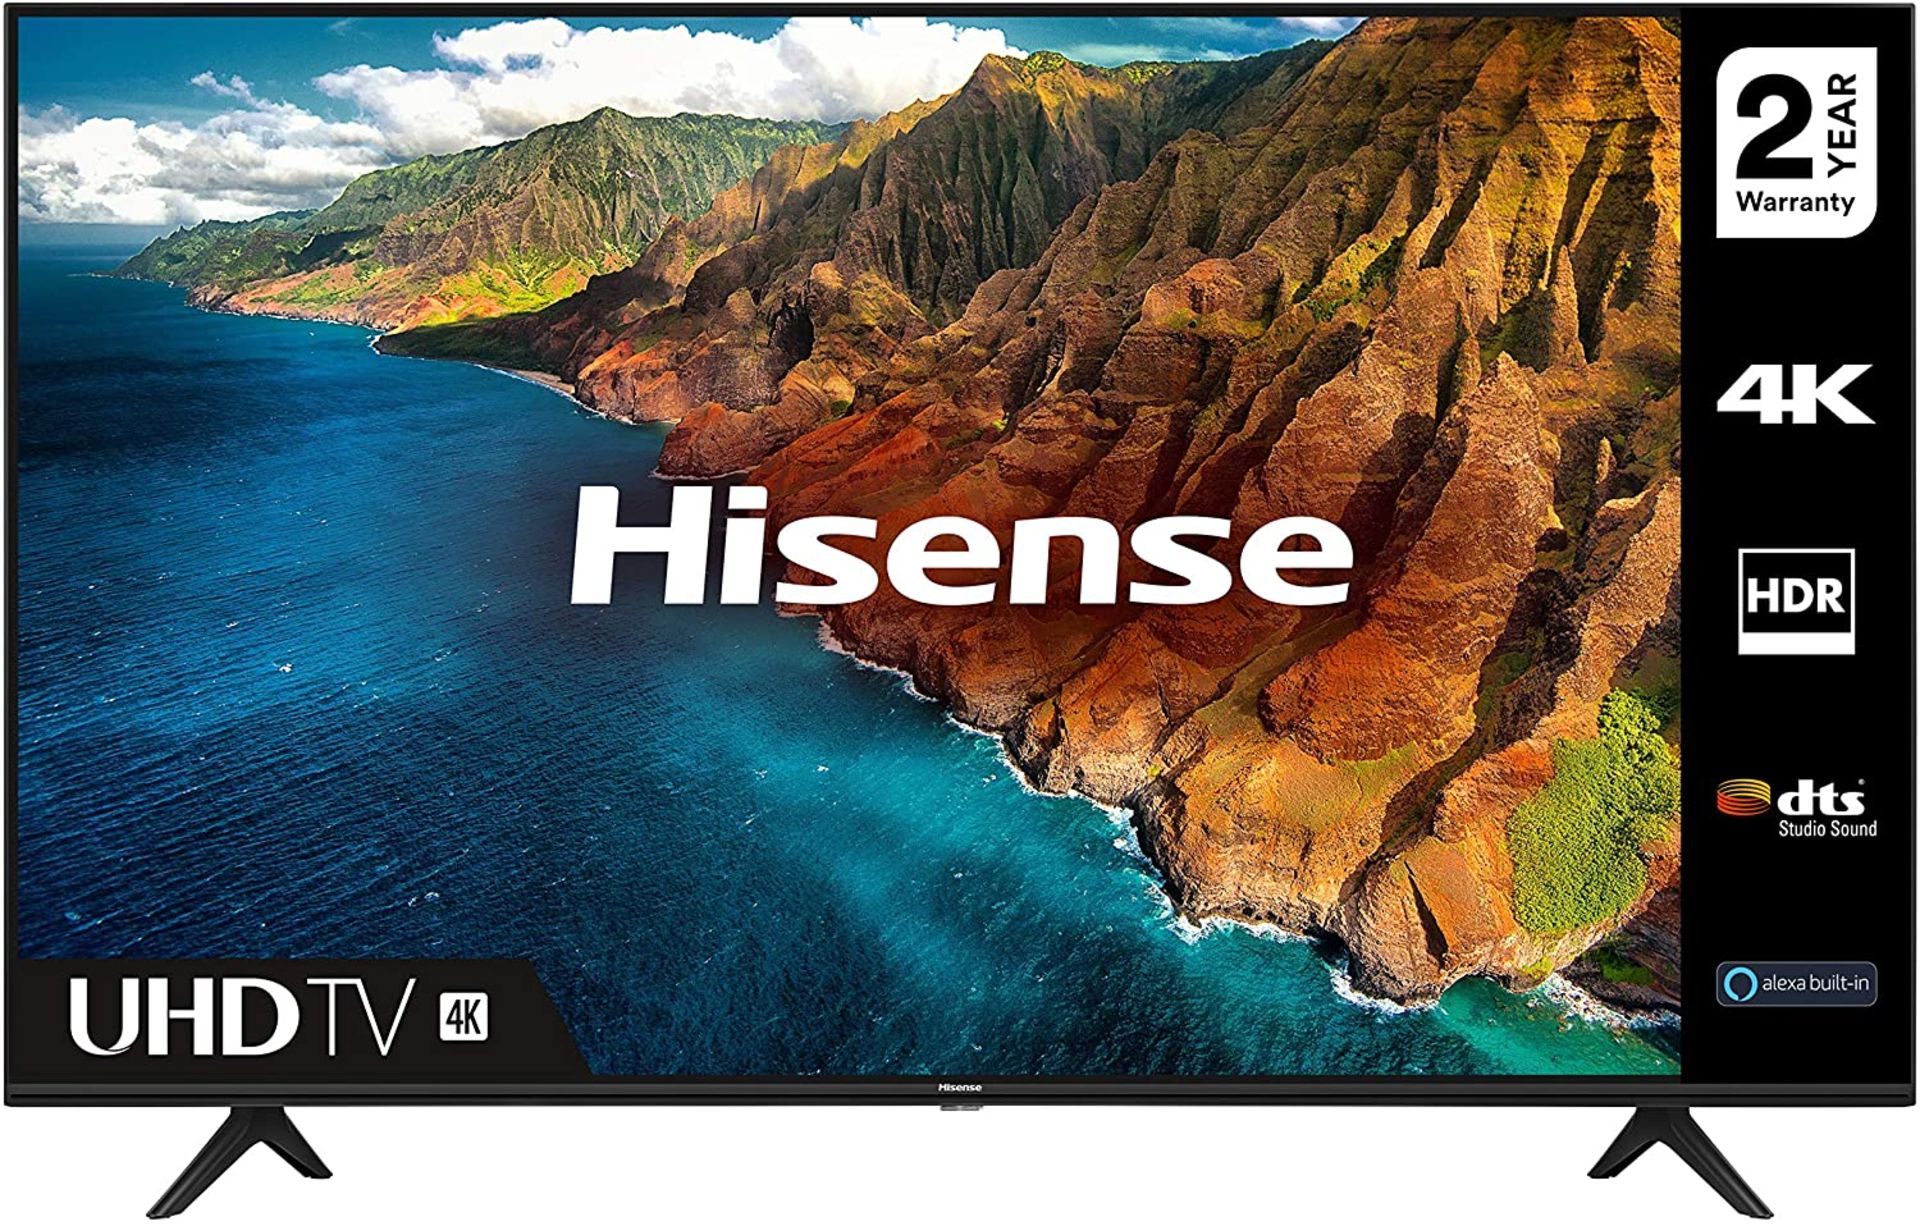 Hisense 43" Smart 4K Ultra HD HDR LED TV RPP £359